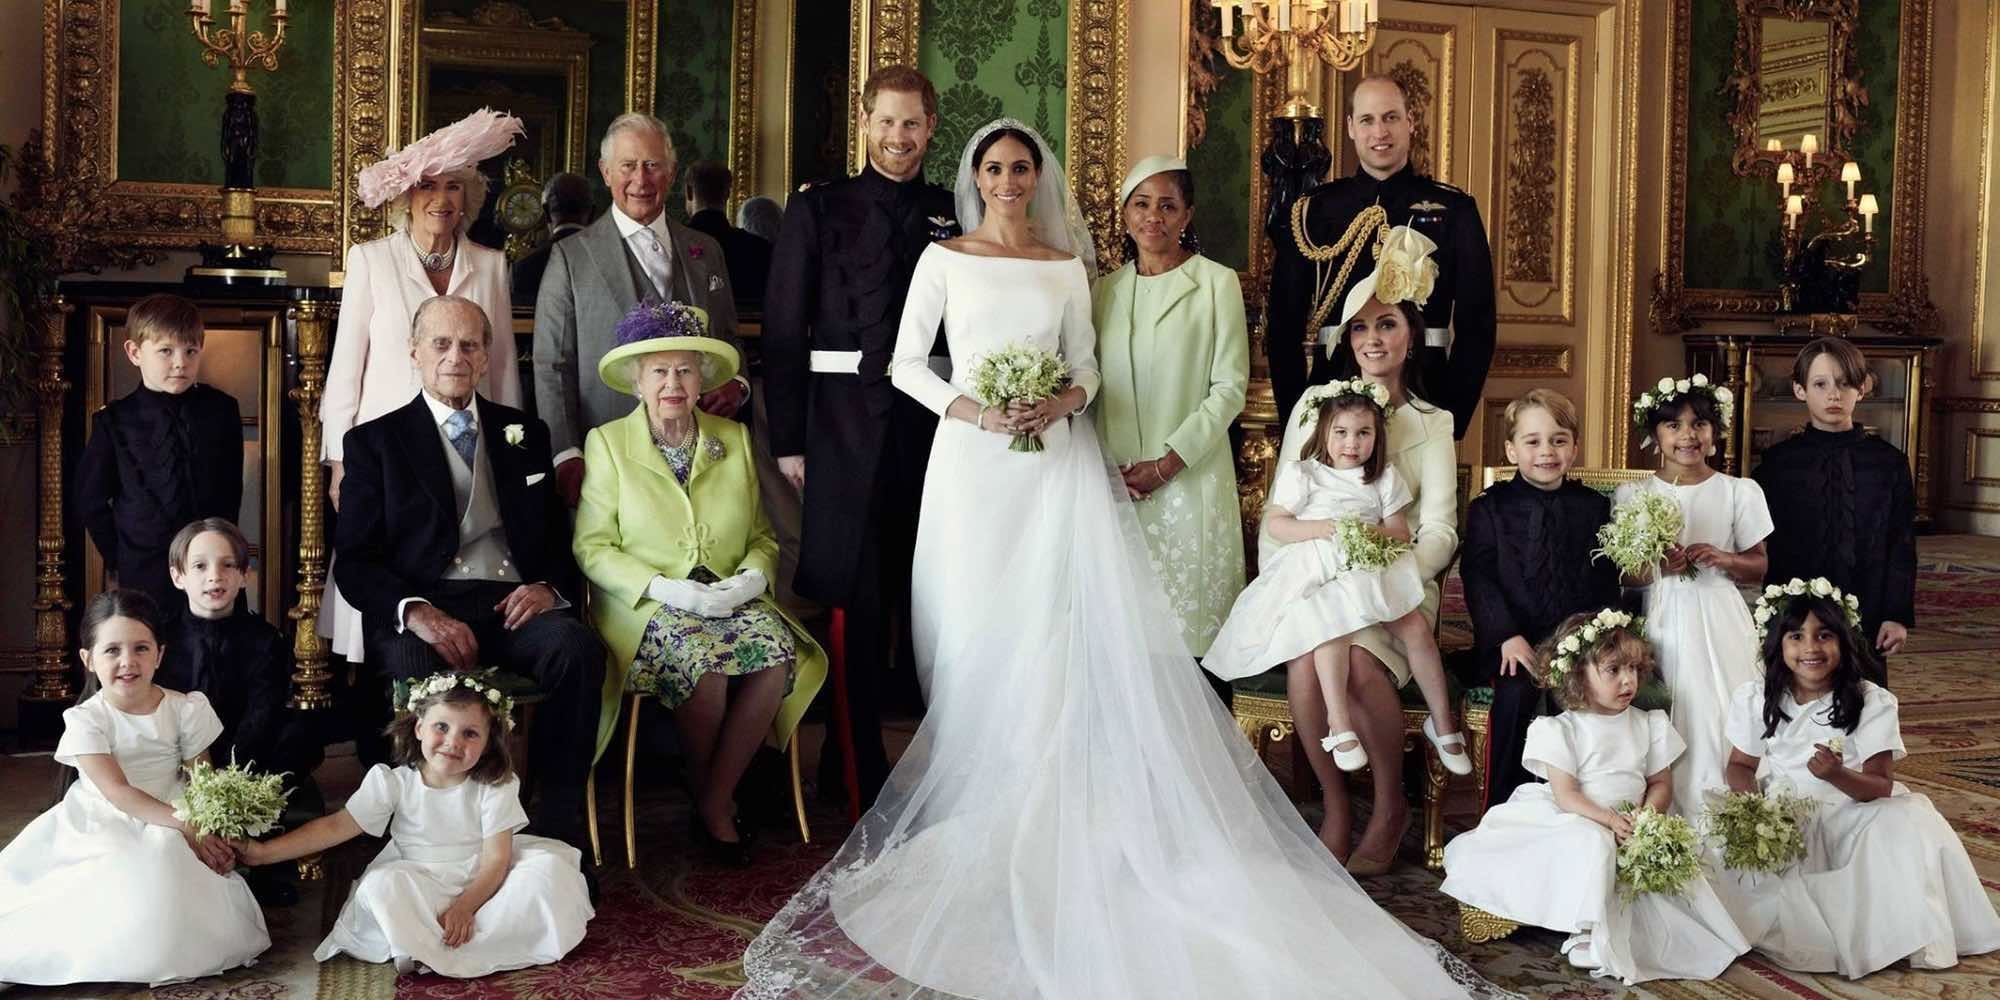 Las fotos oficiales de la boda del Príncipe Harry y Meghan Markle